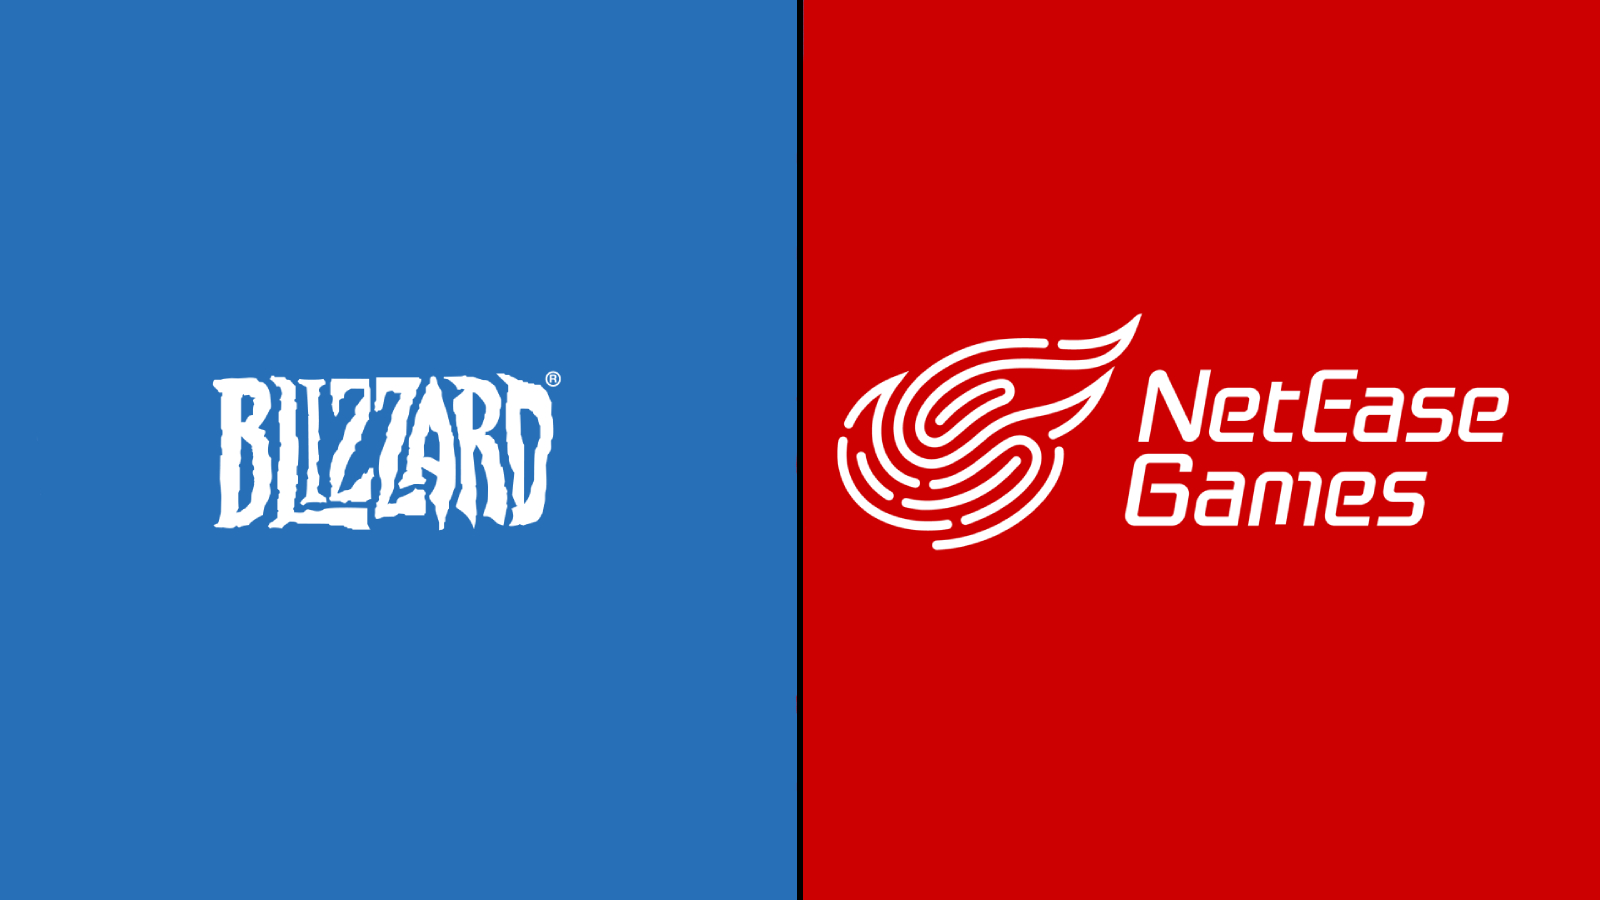 Po akvizícii Microsoftu sa Blizzard údajne znovu spojil s čínskym vydavateľom NetEase